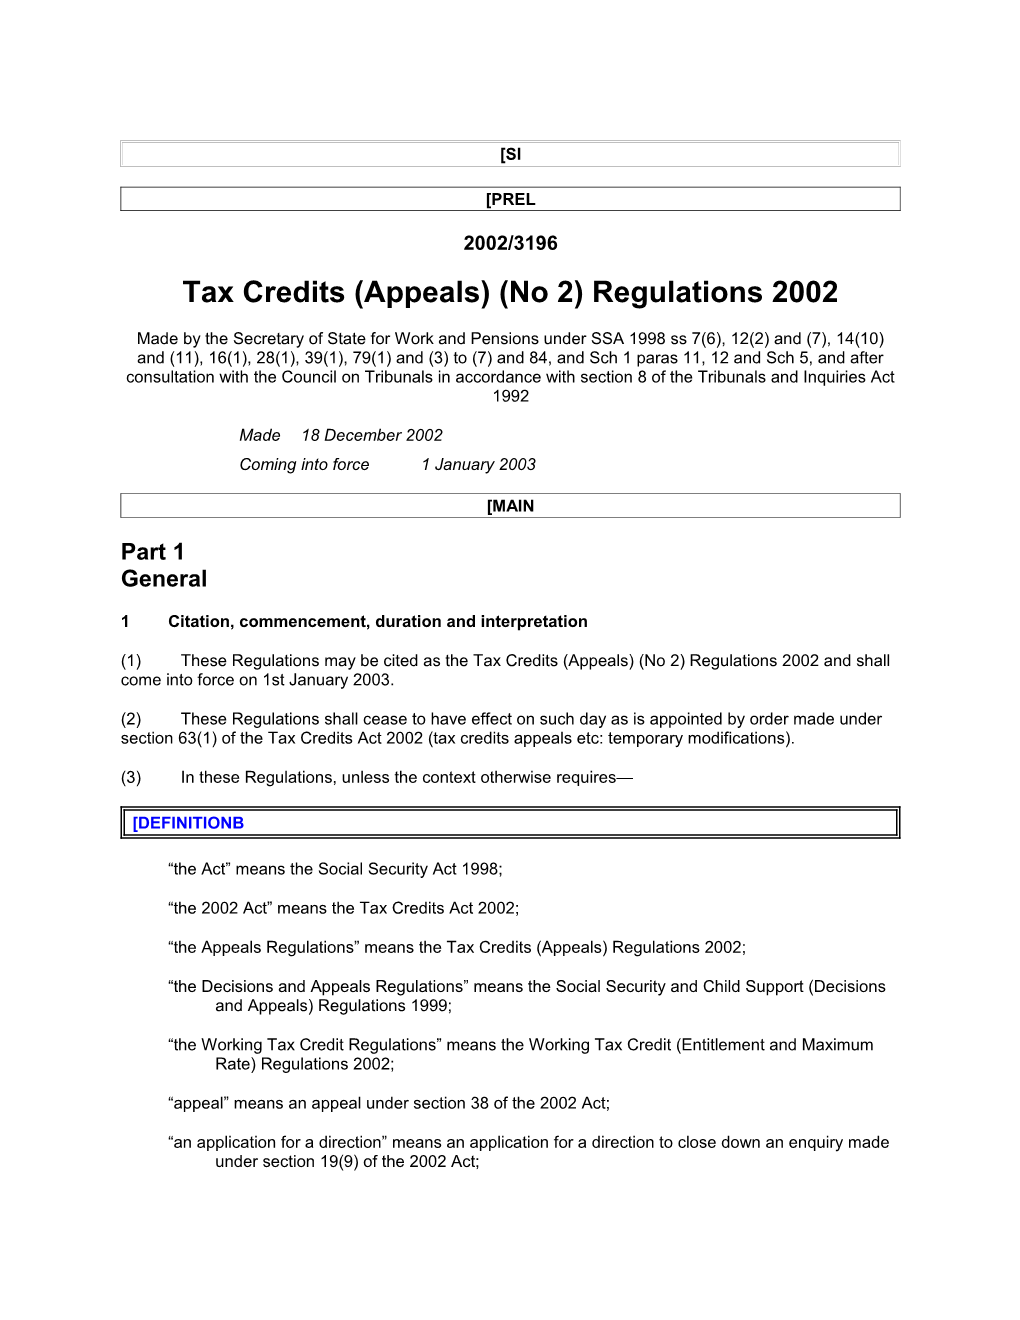 Tax Credits (Appeals) (No 2) Regulations 2002